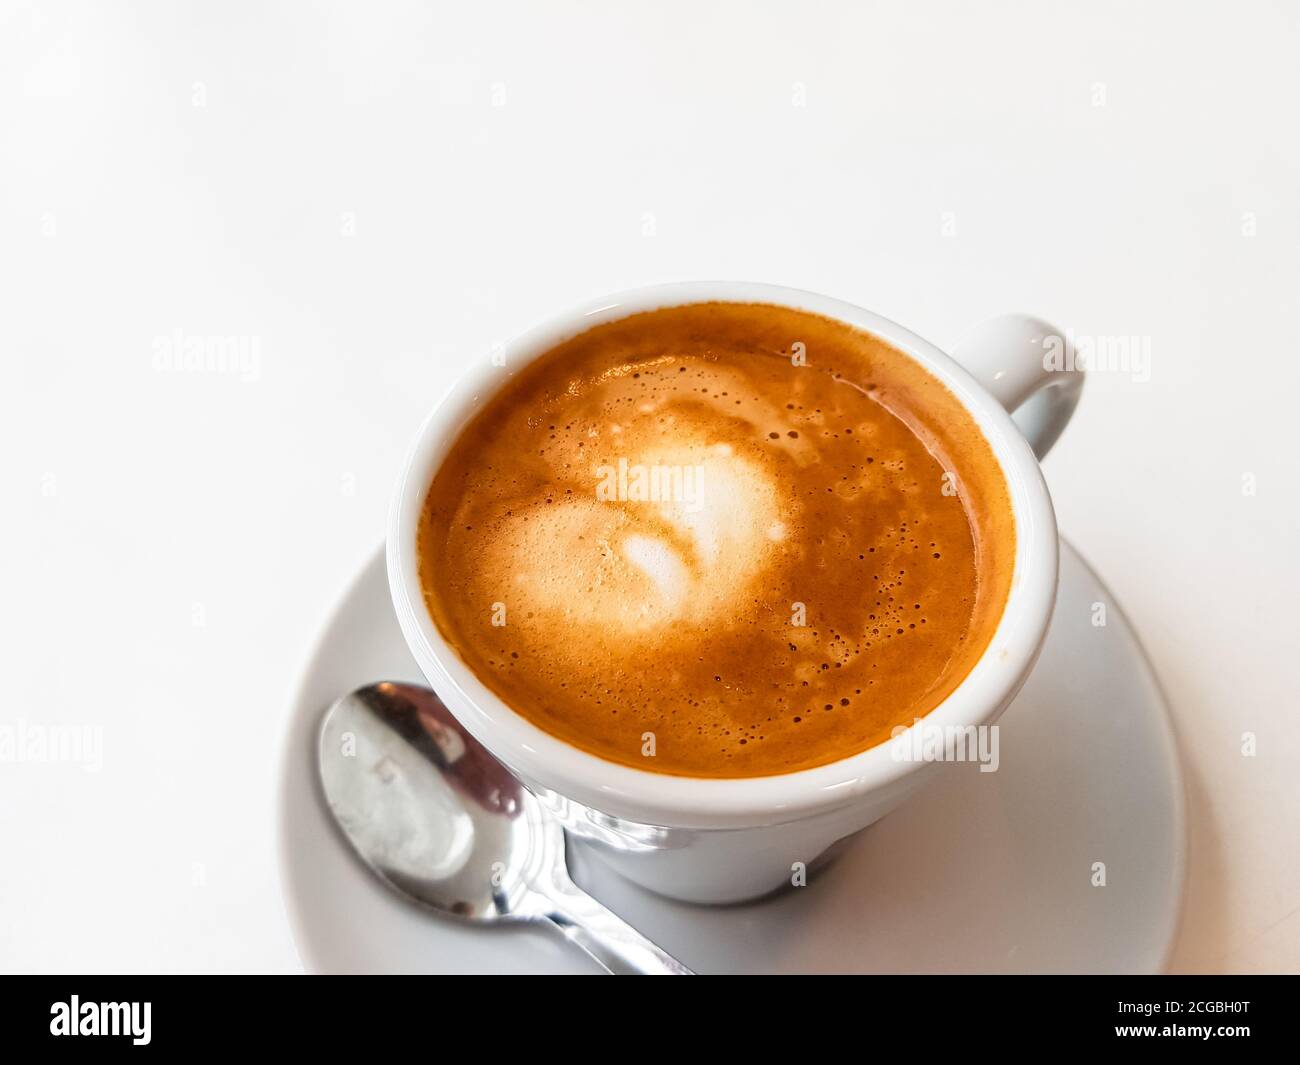 Cortado-spanischer Kaffee mit Milch in einer kleinen Tasse. Stockfoto